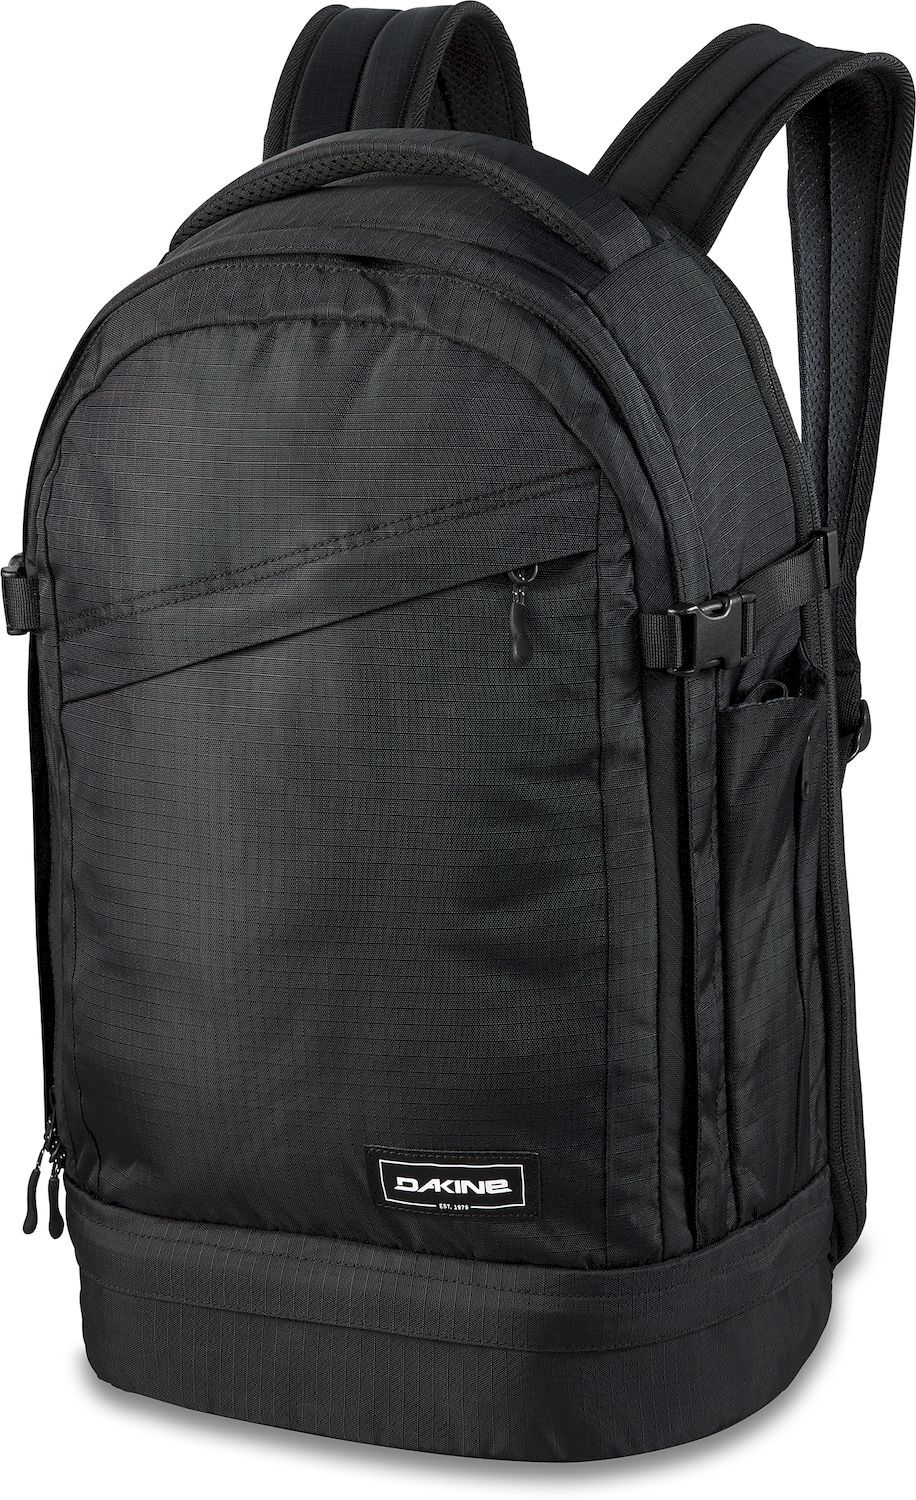 Dakine Verge Backpack 25L - Backpack